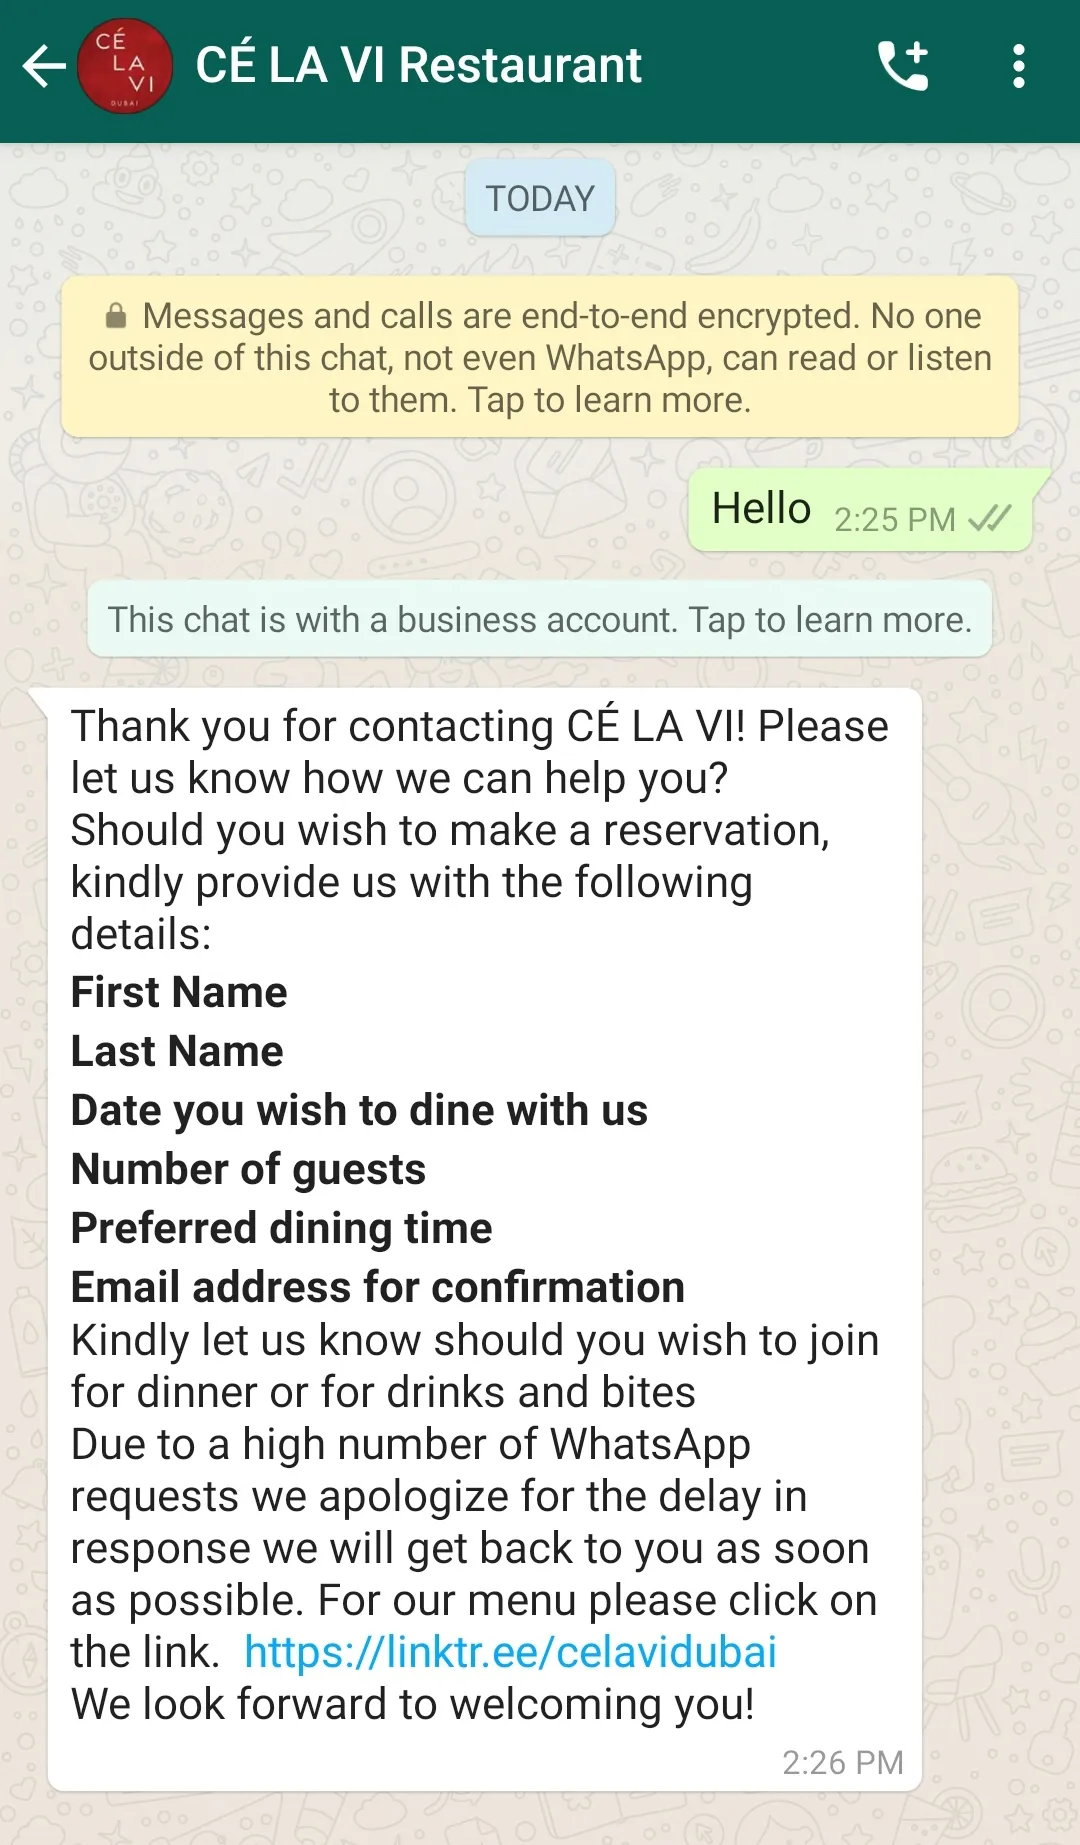 餐厅公司在海外使用WhatsApp智能营销机器人的聊天对话功能简化座位预订流程